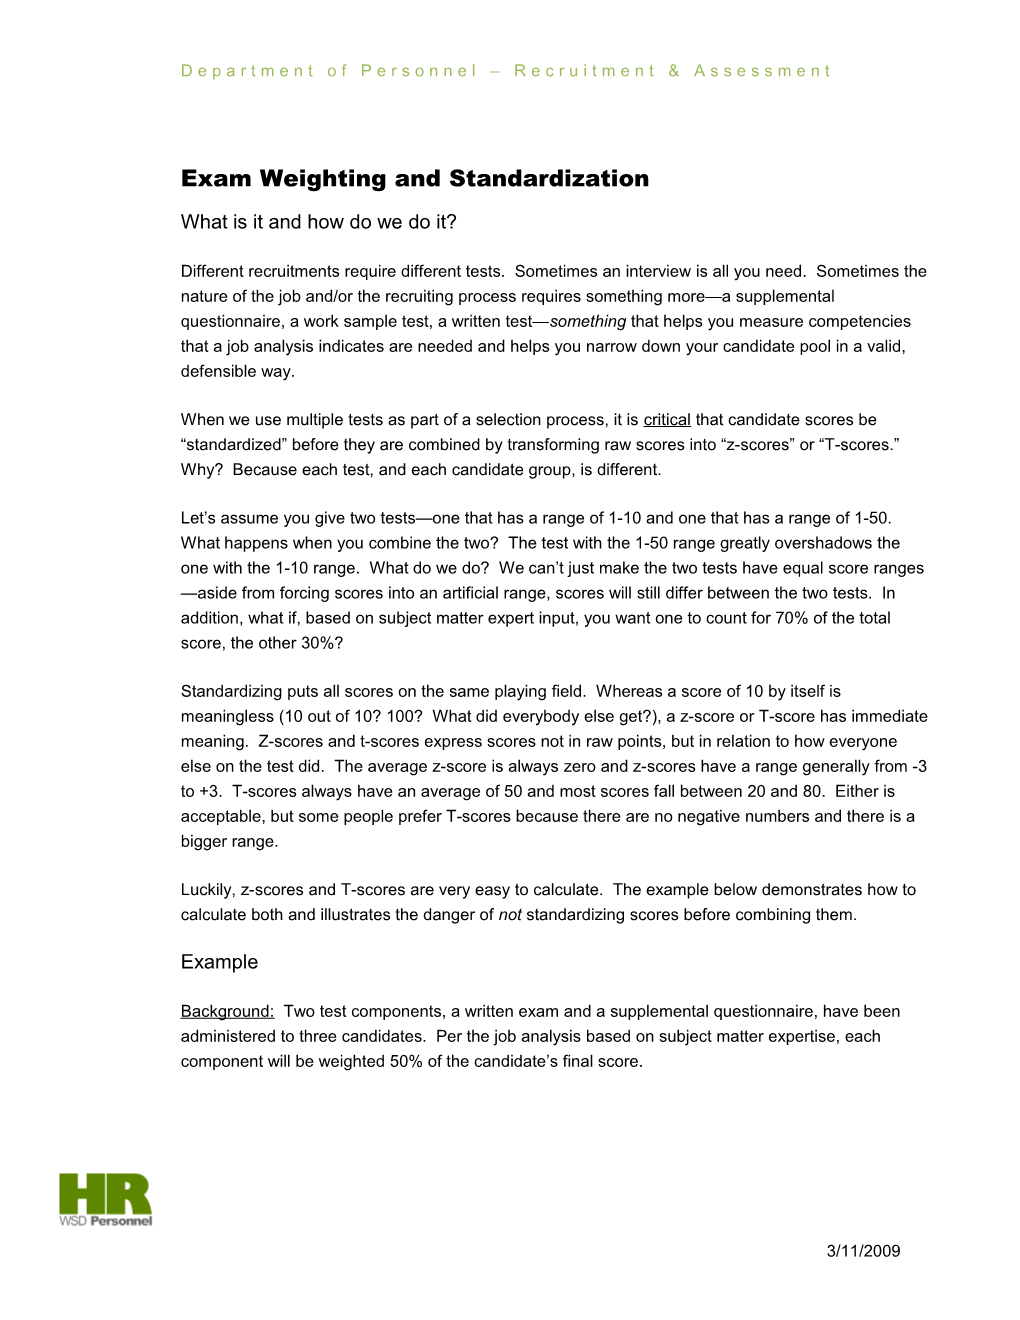 Exam Weighting and Standardization